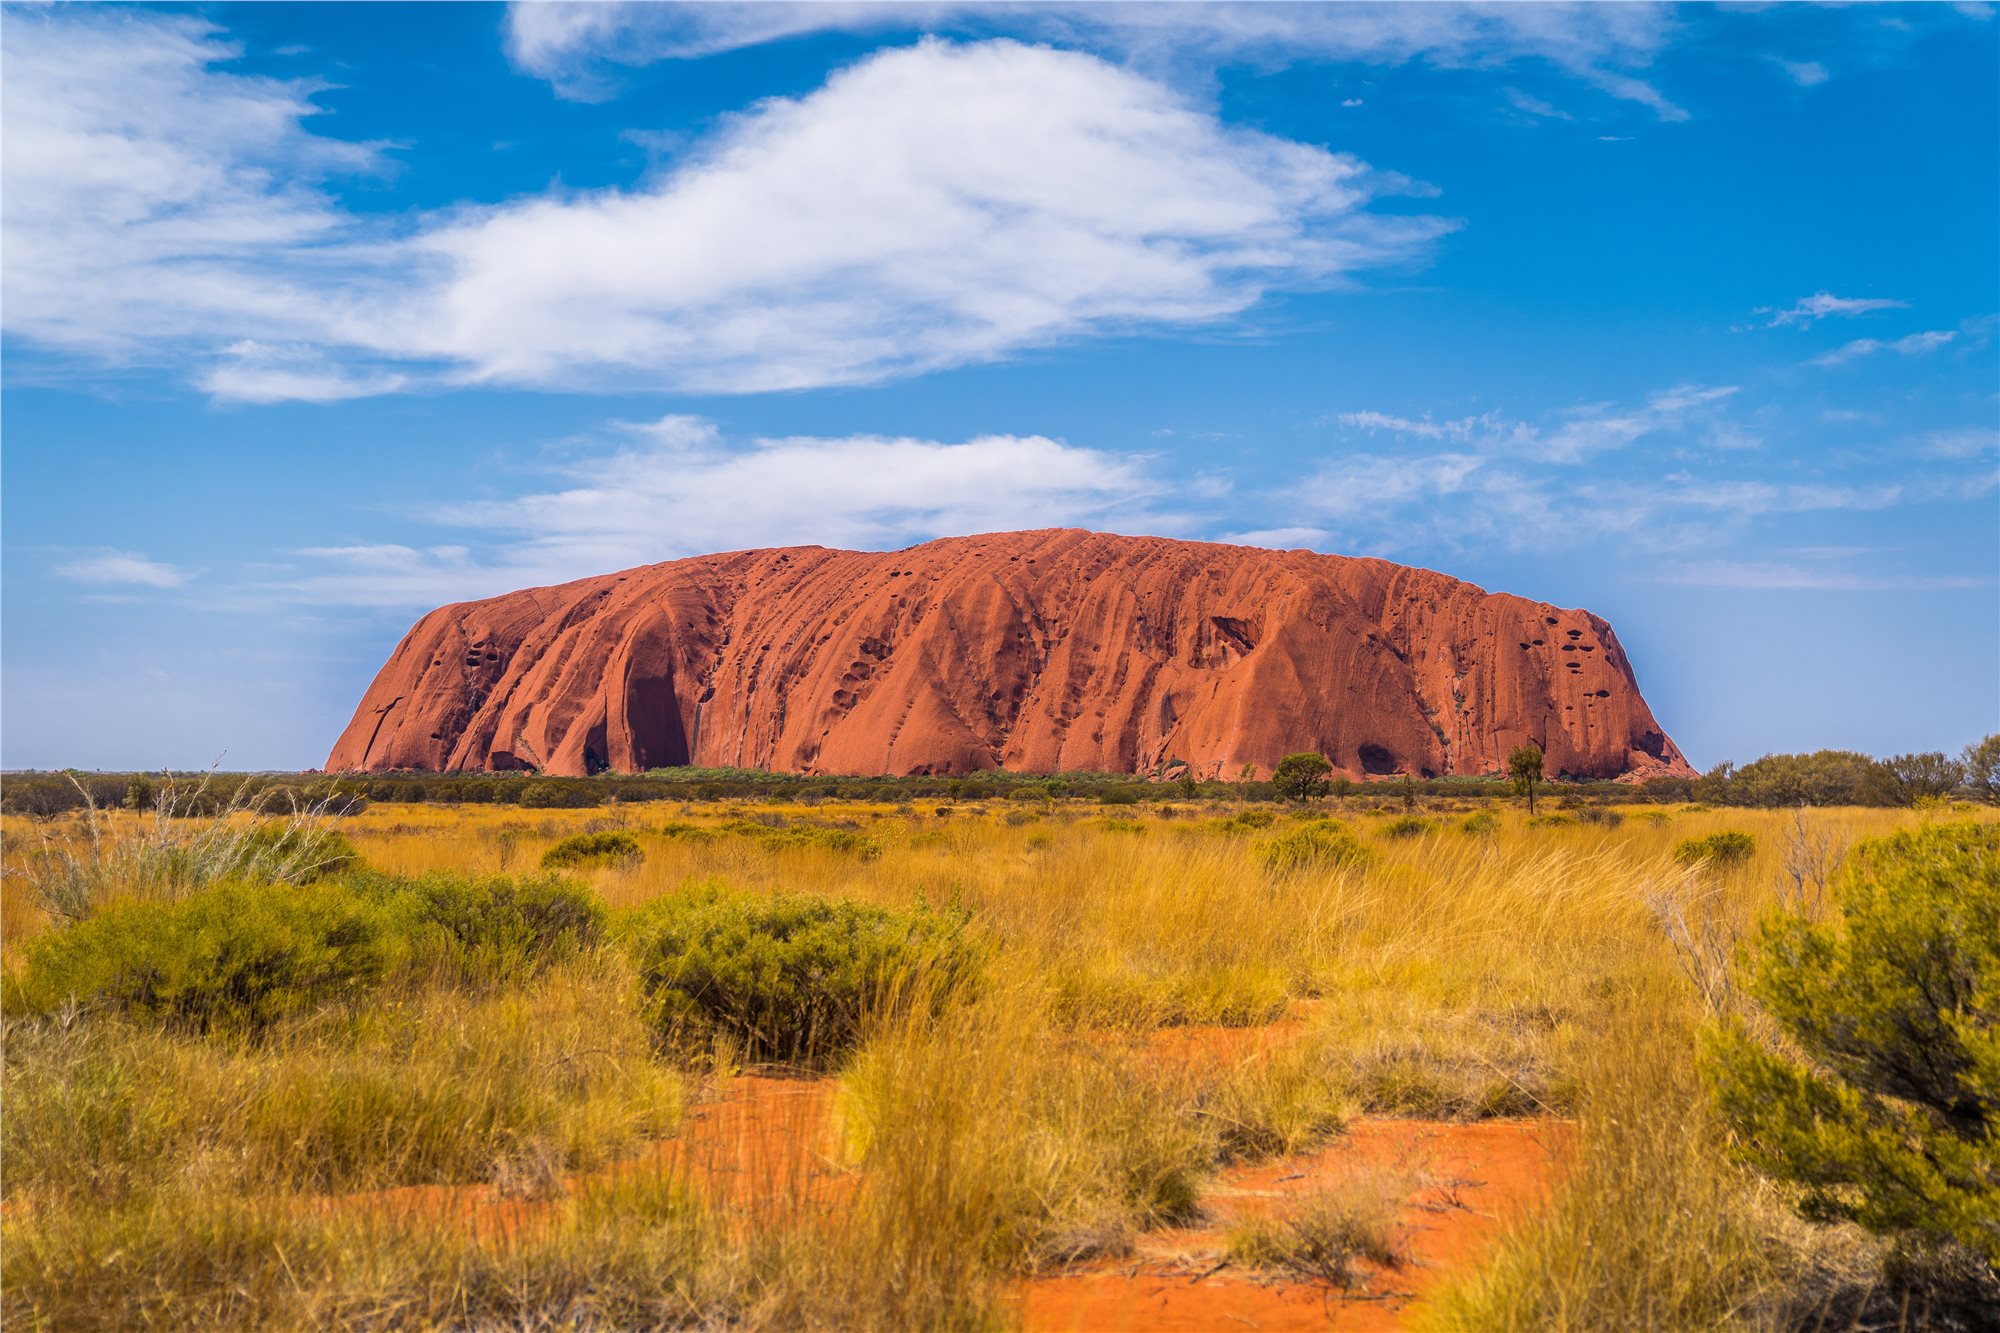 Austrálie -Uluru